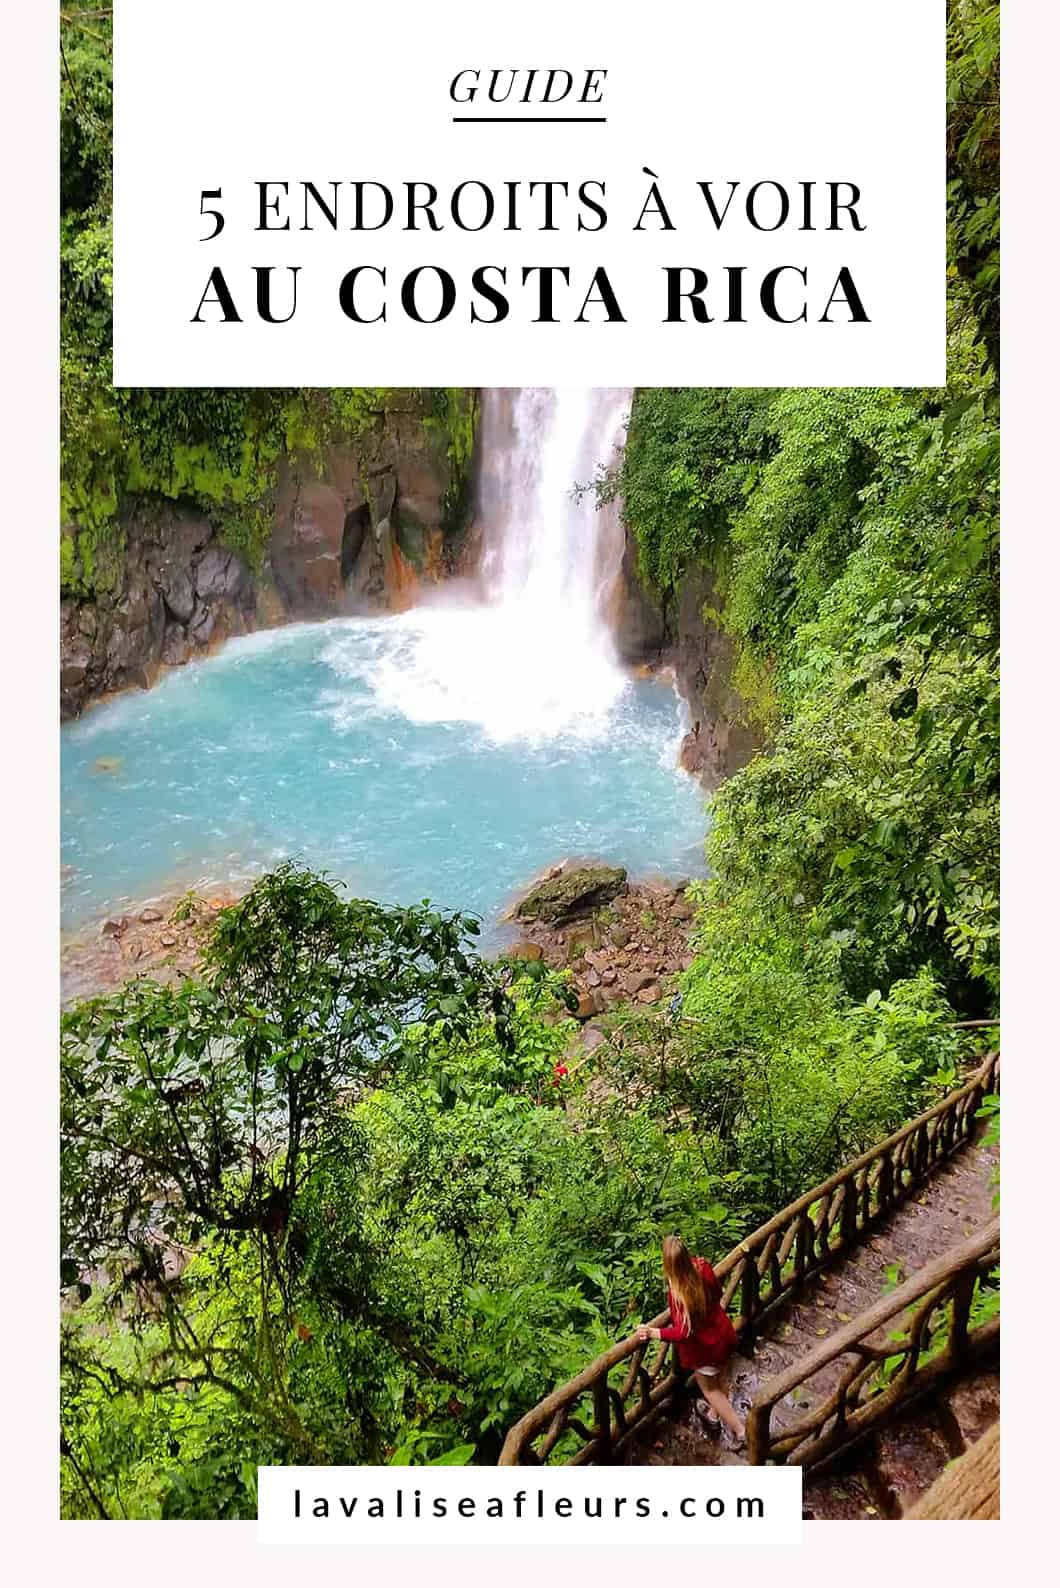 Guide des 5 endroits à voir au Costa Rica